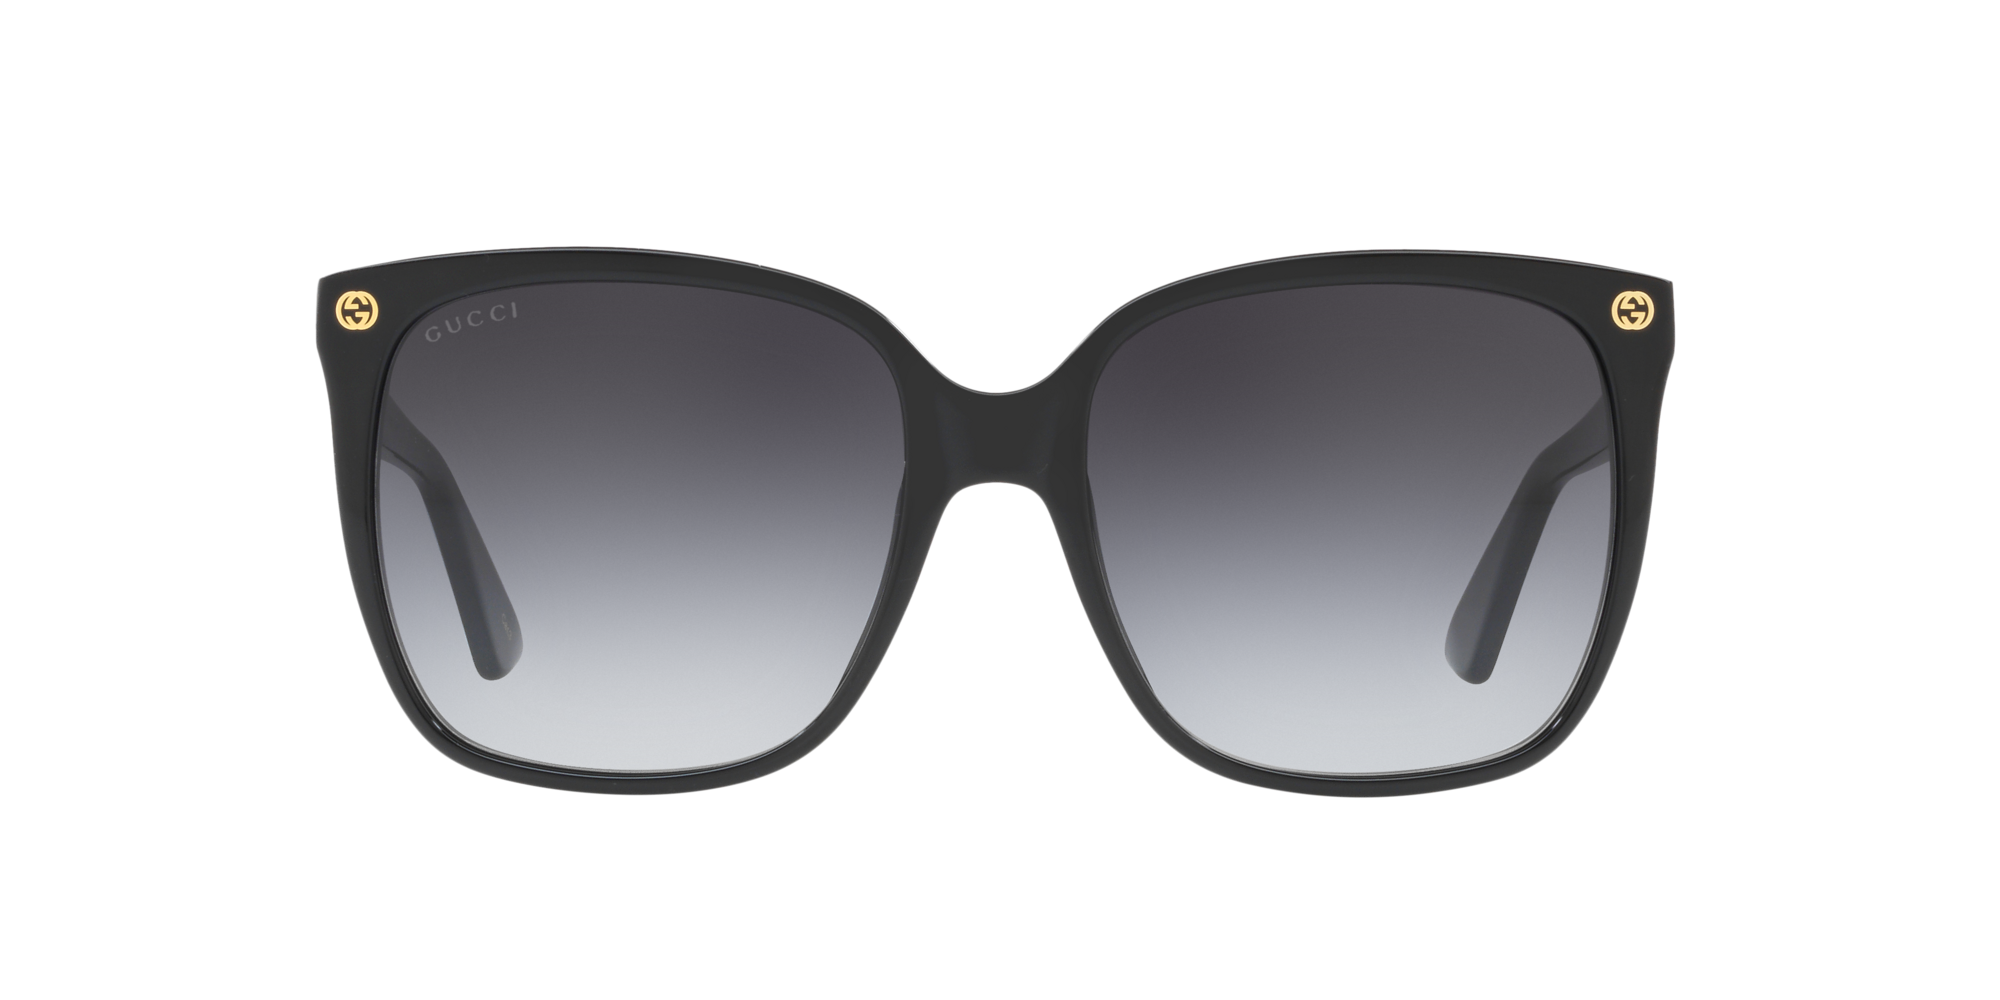 Gucci Grey Square Men's Sunglasses GG0340S 006 58 889652155562 - Sunglasses  - Jomashop